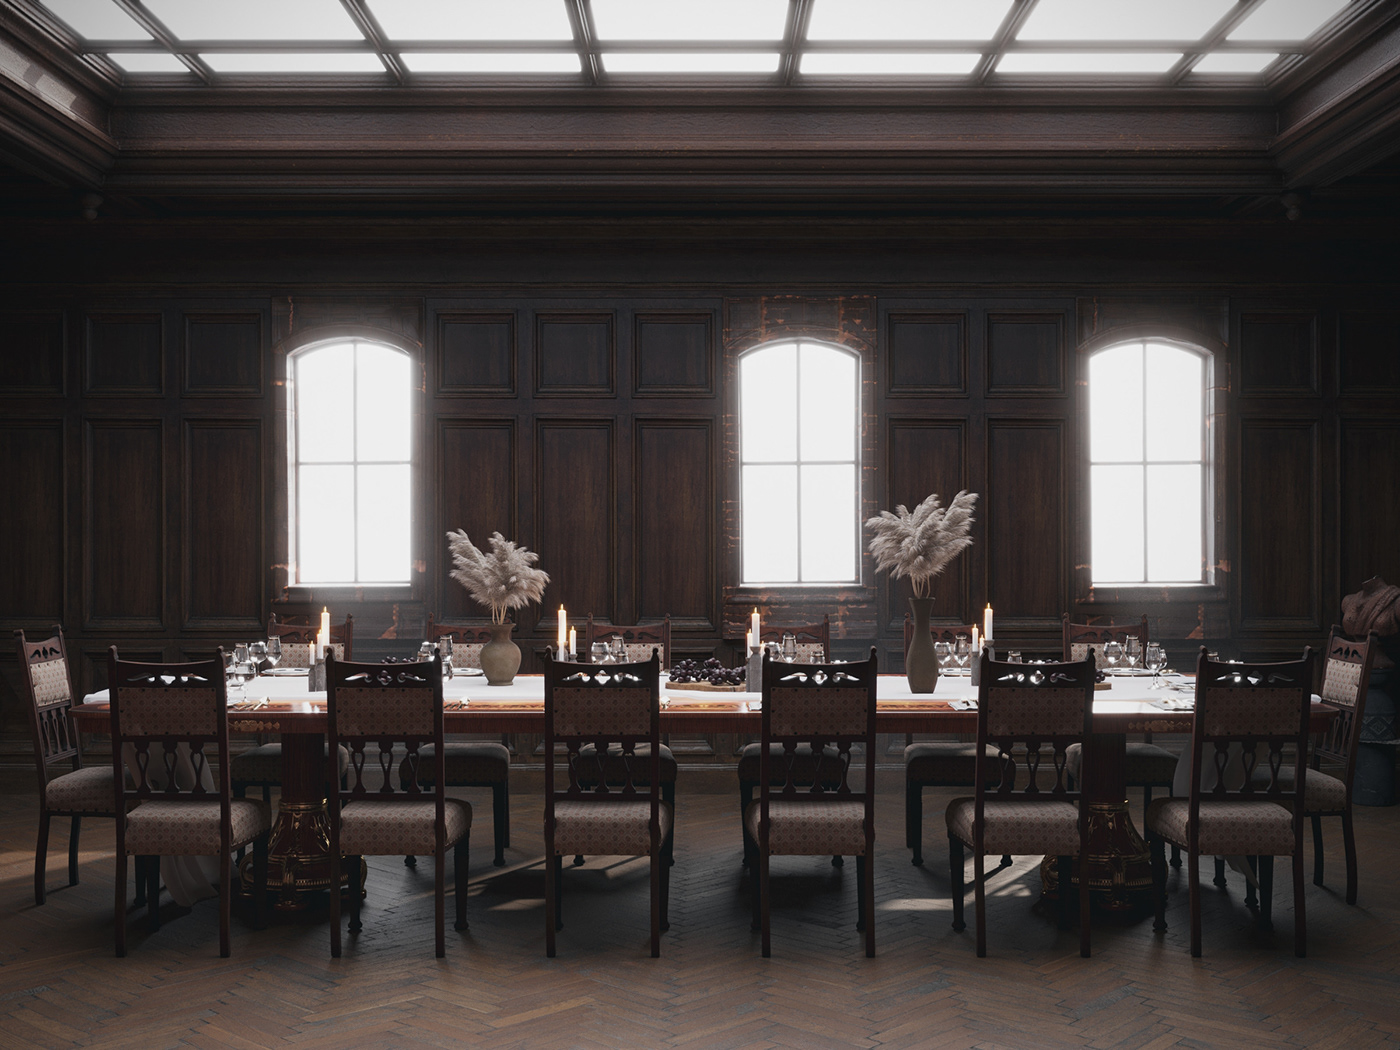 20 century architecture archviz interior design  visualization Quixel interiordesign Interior dining room dining